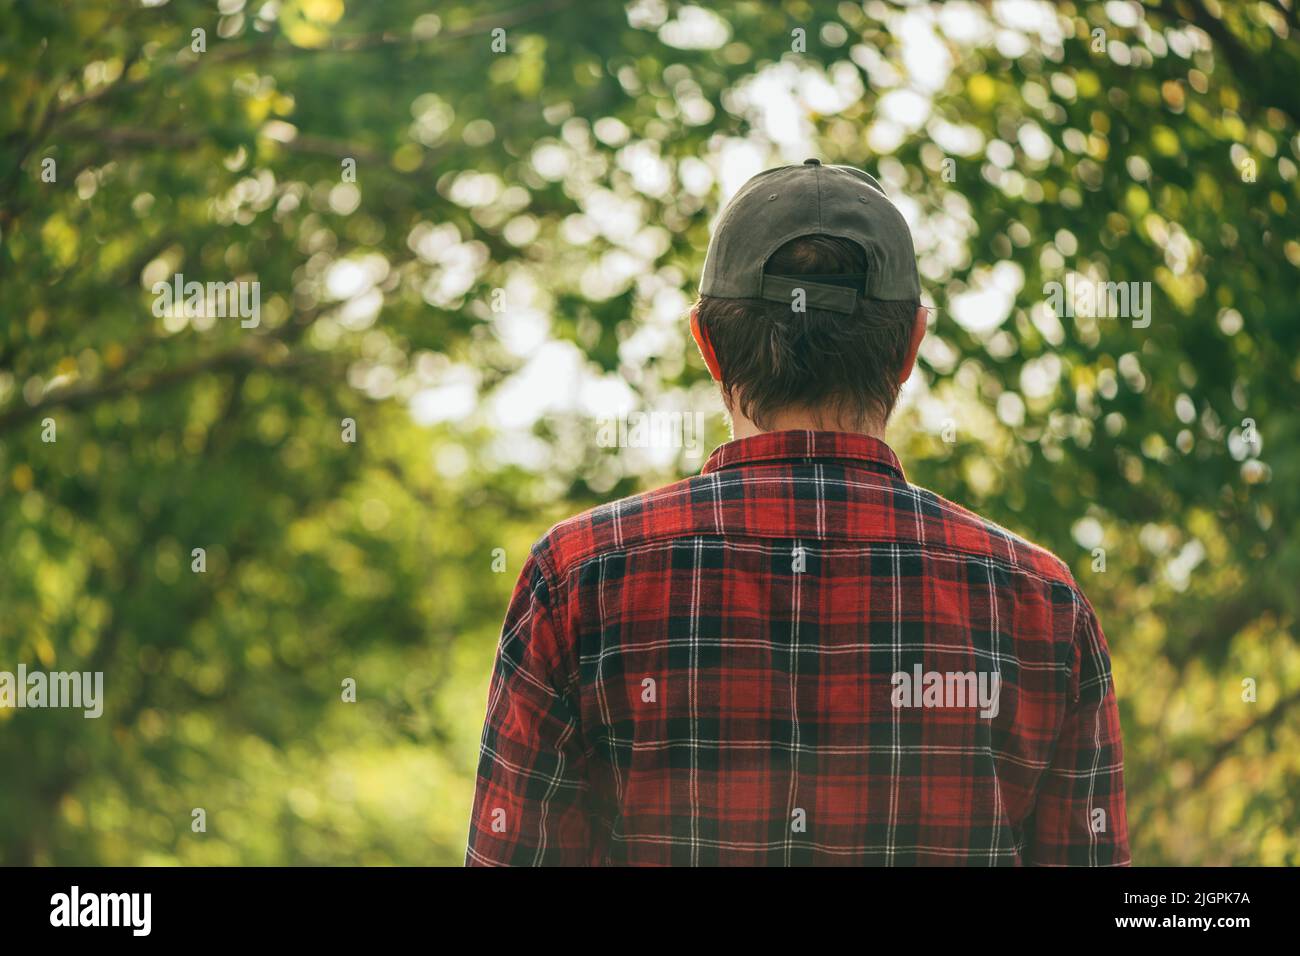 Rückansicht eines Bauern mit kariertem Hemd und Truckerhut, der in einem Walnussgarten steht und Bäume ansieht, selektiver Fokus Stockfoto